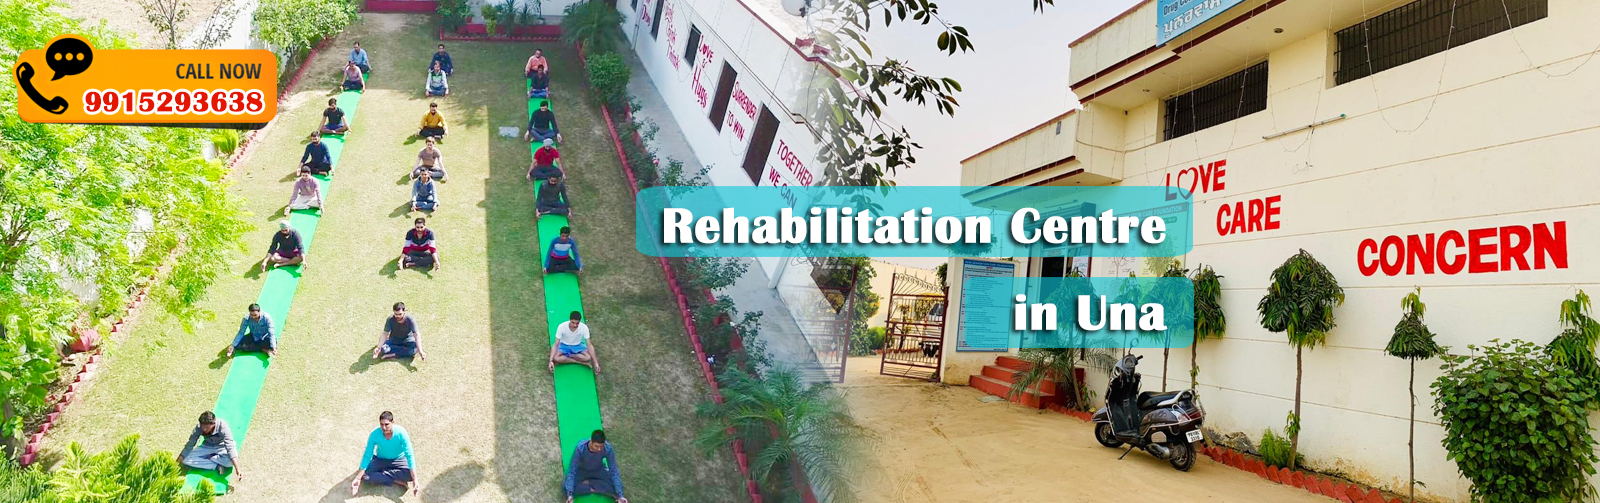 Rehabilitation Centre in Una